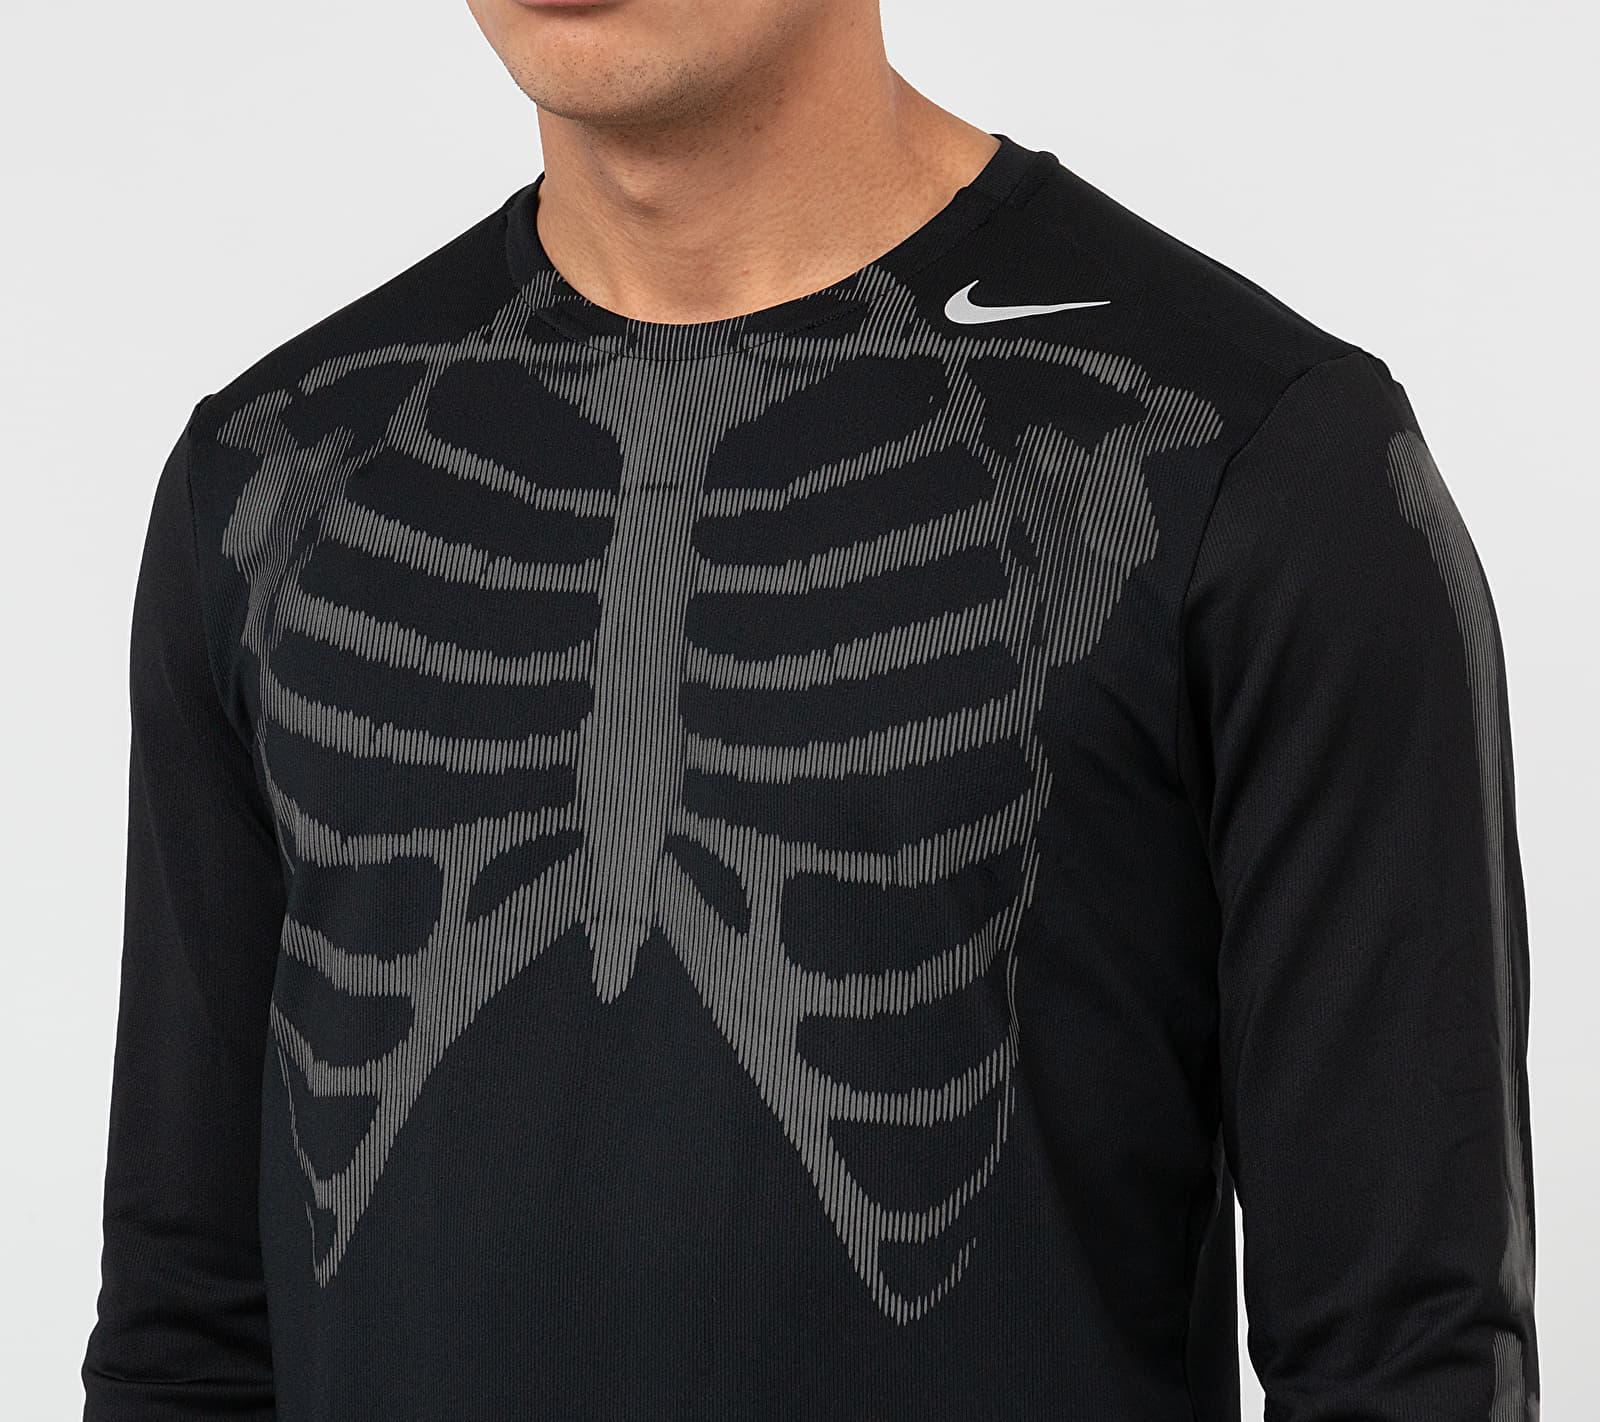 nike skeleton t shirt